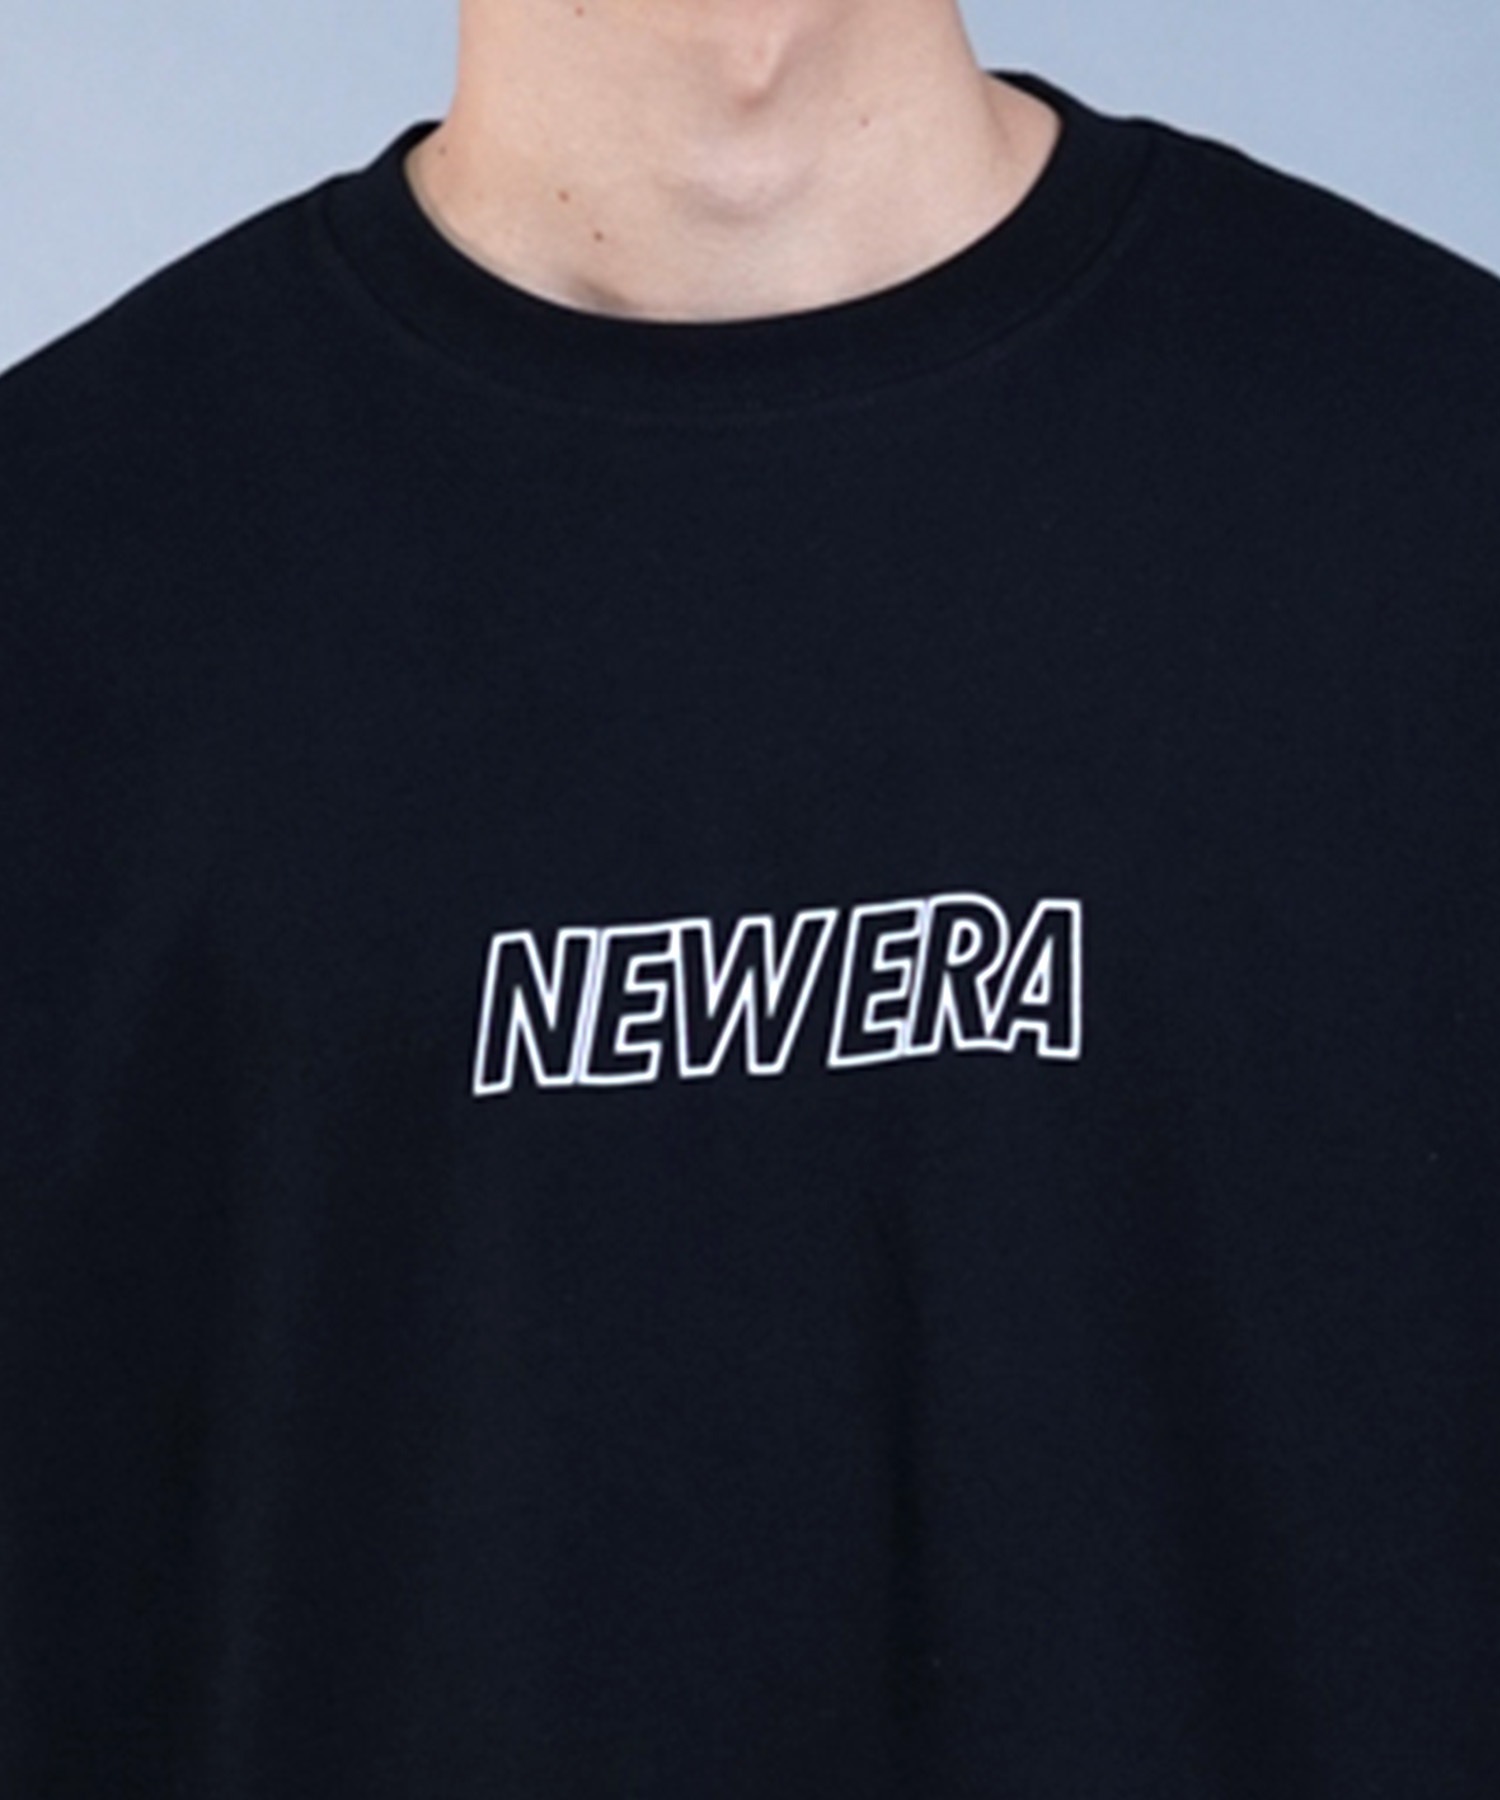 【ムラサキスポーツ限定】 NEW ERA ニューエラ メンズ 長袖 Tシャツ ロンT オーバーサイズ バックプリント クルーネック 吸汗速乾 UVカット 14306822(BK/WT-M)